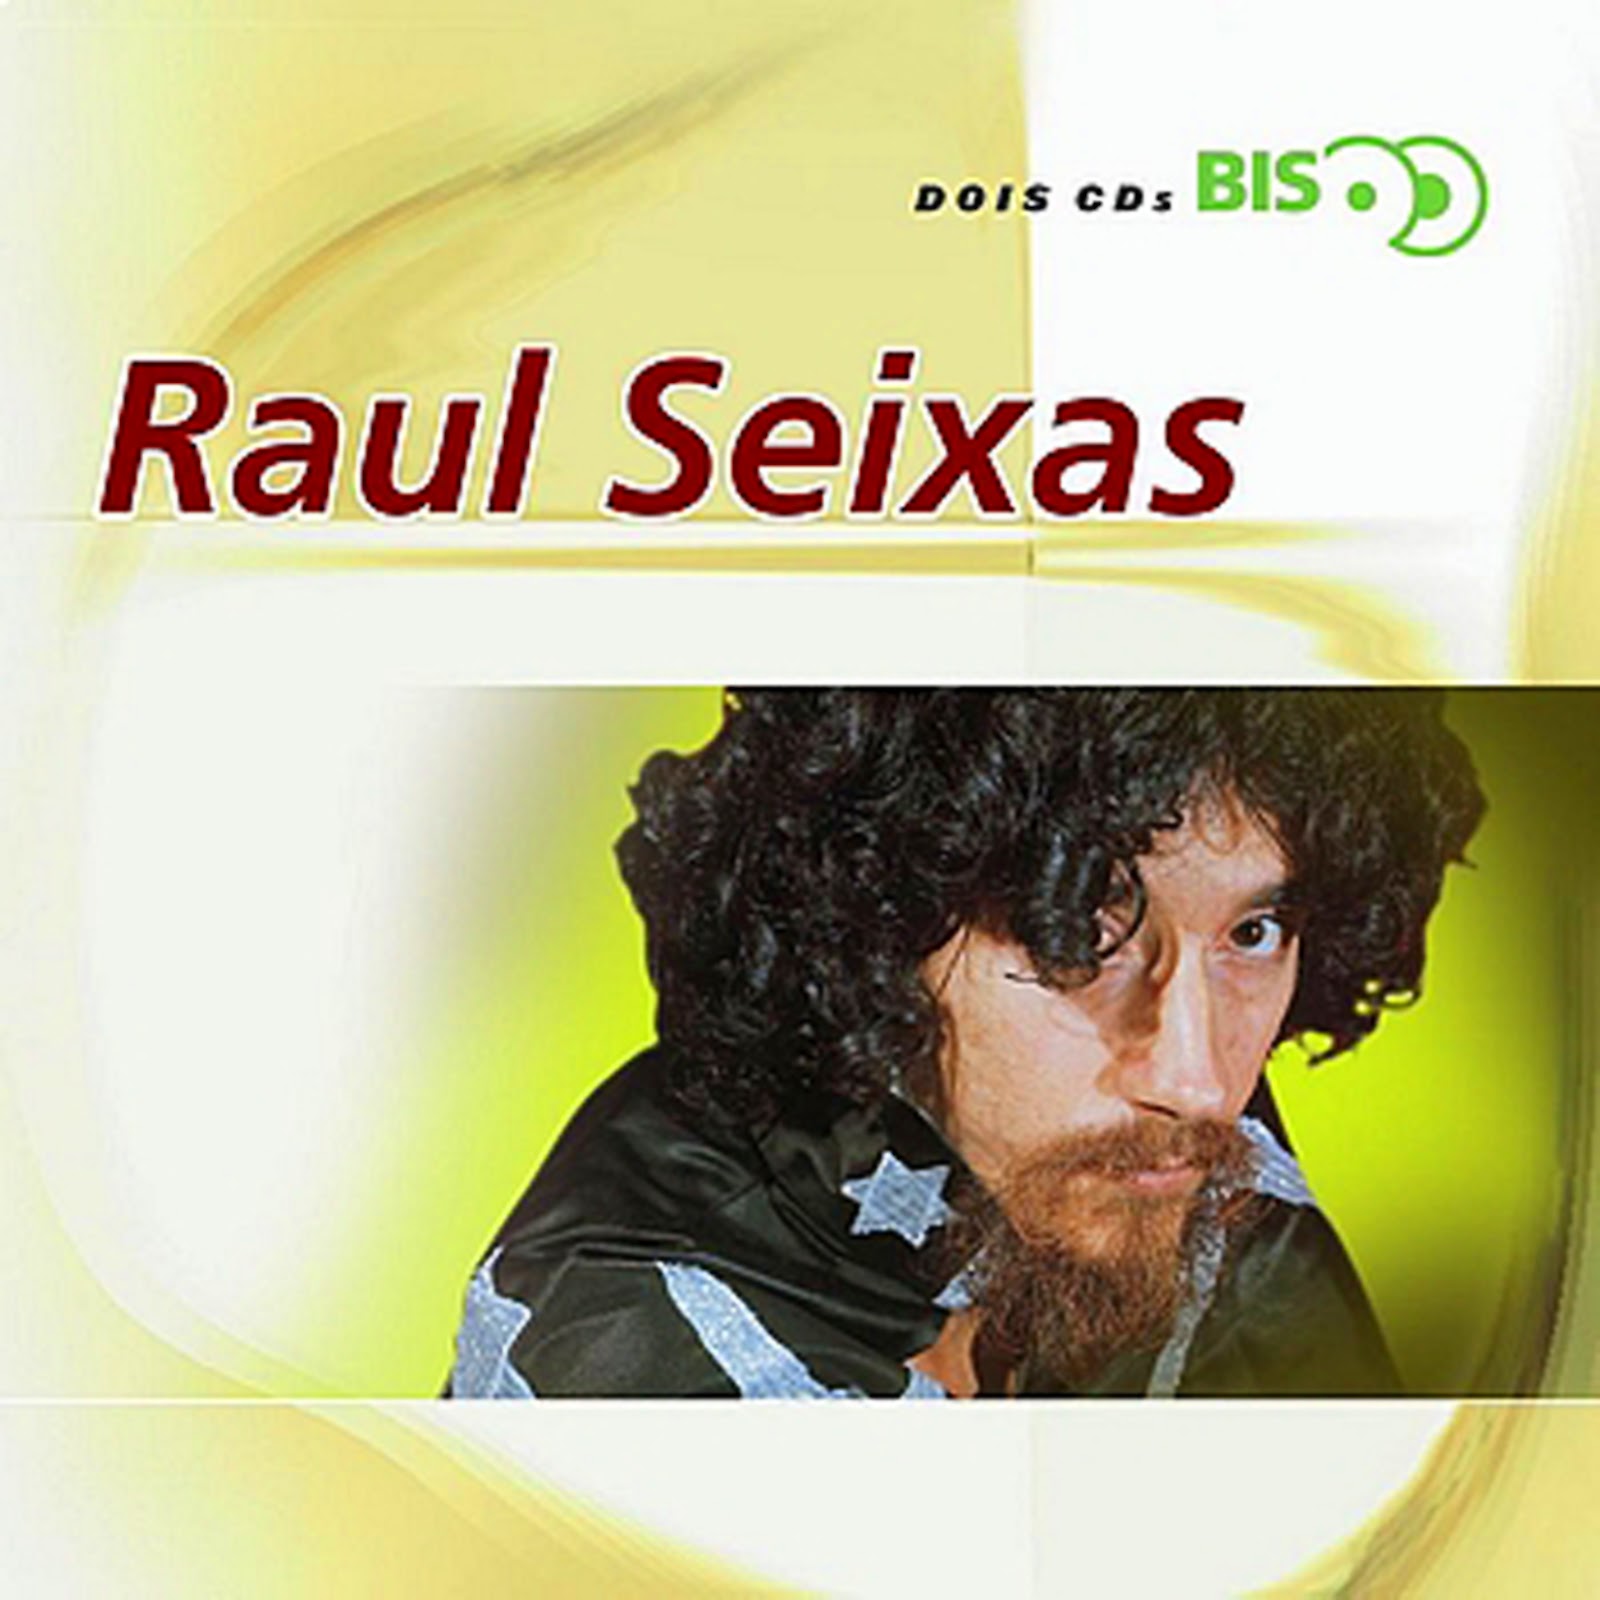 Raul Seixas   14   Você Ainda Pode Sonhar (Lucy in the Sky With Diam)   CD 02   Coleção BIS